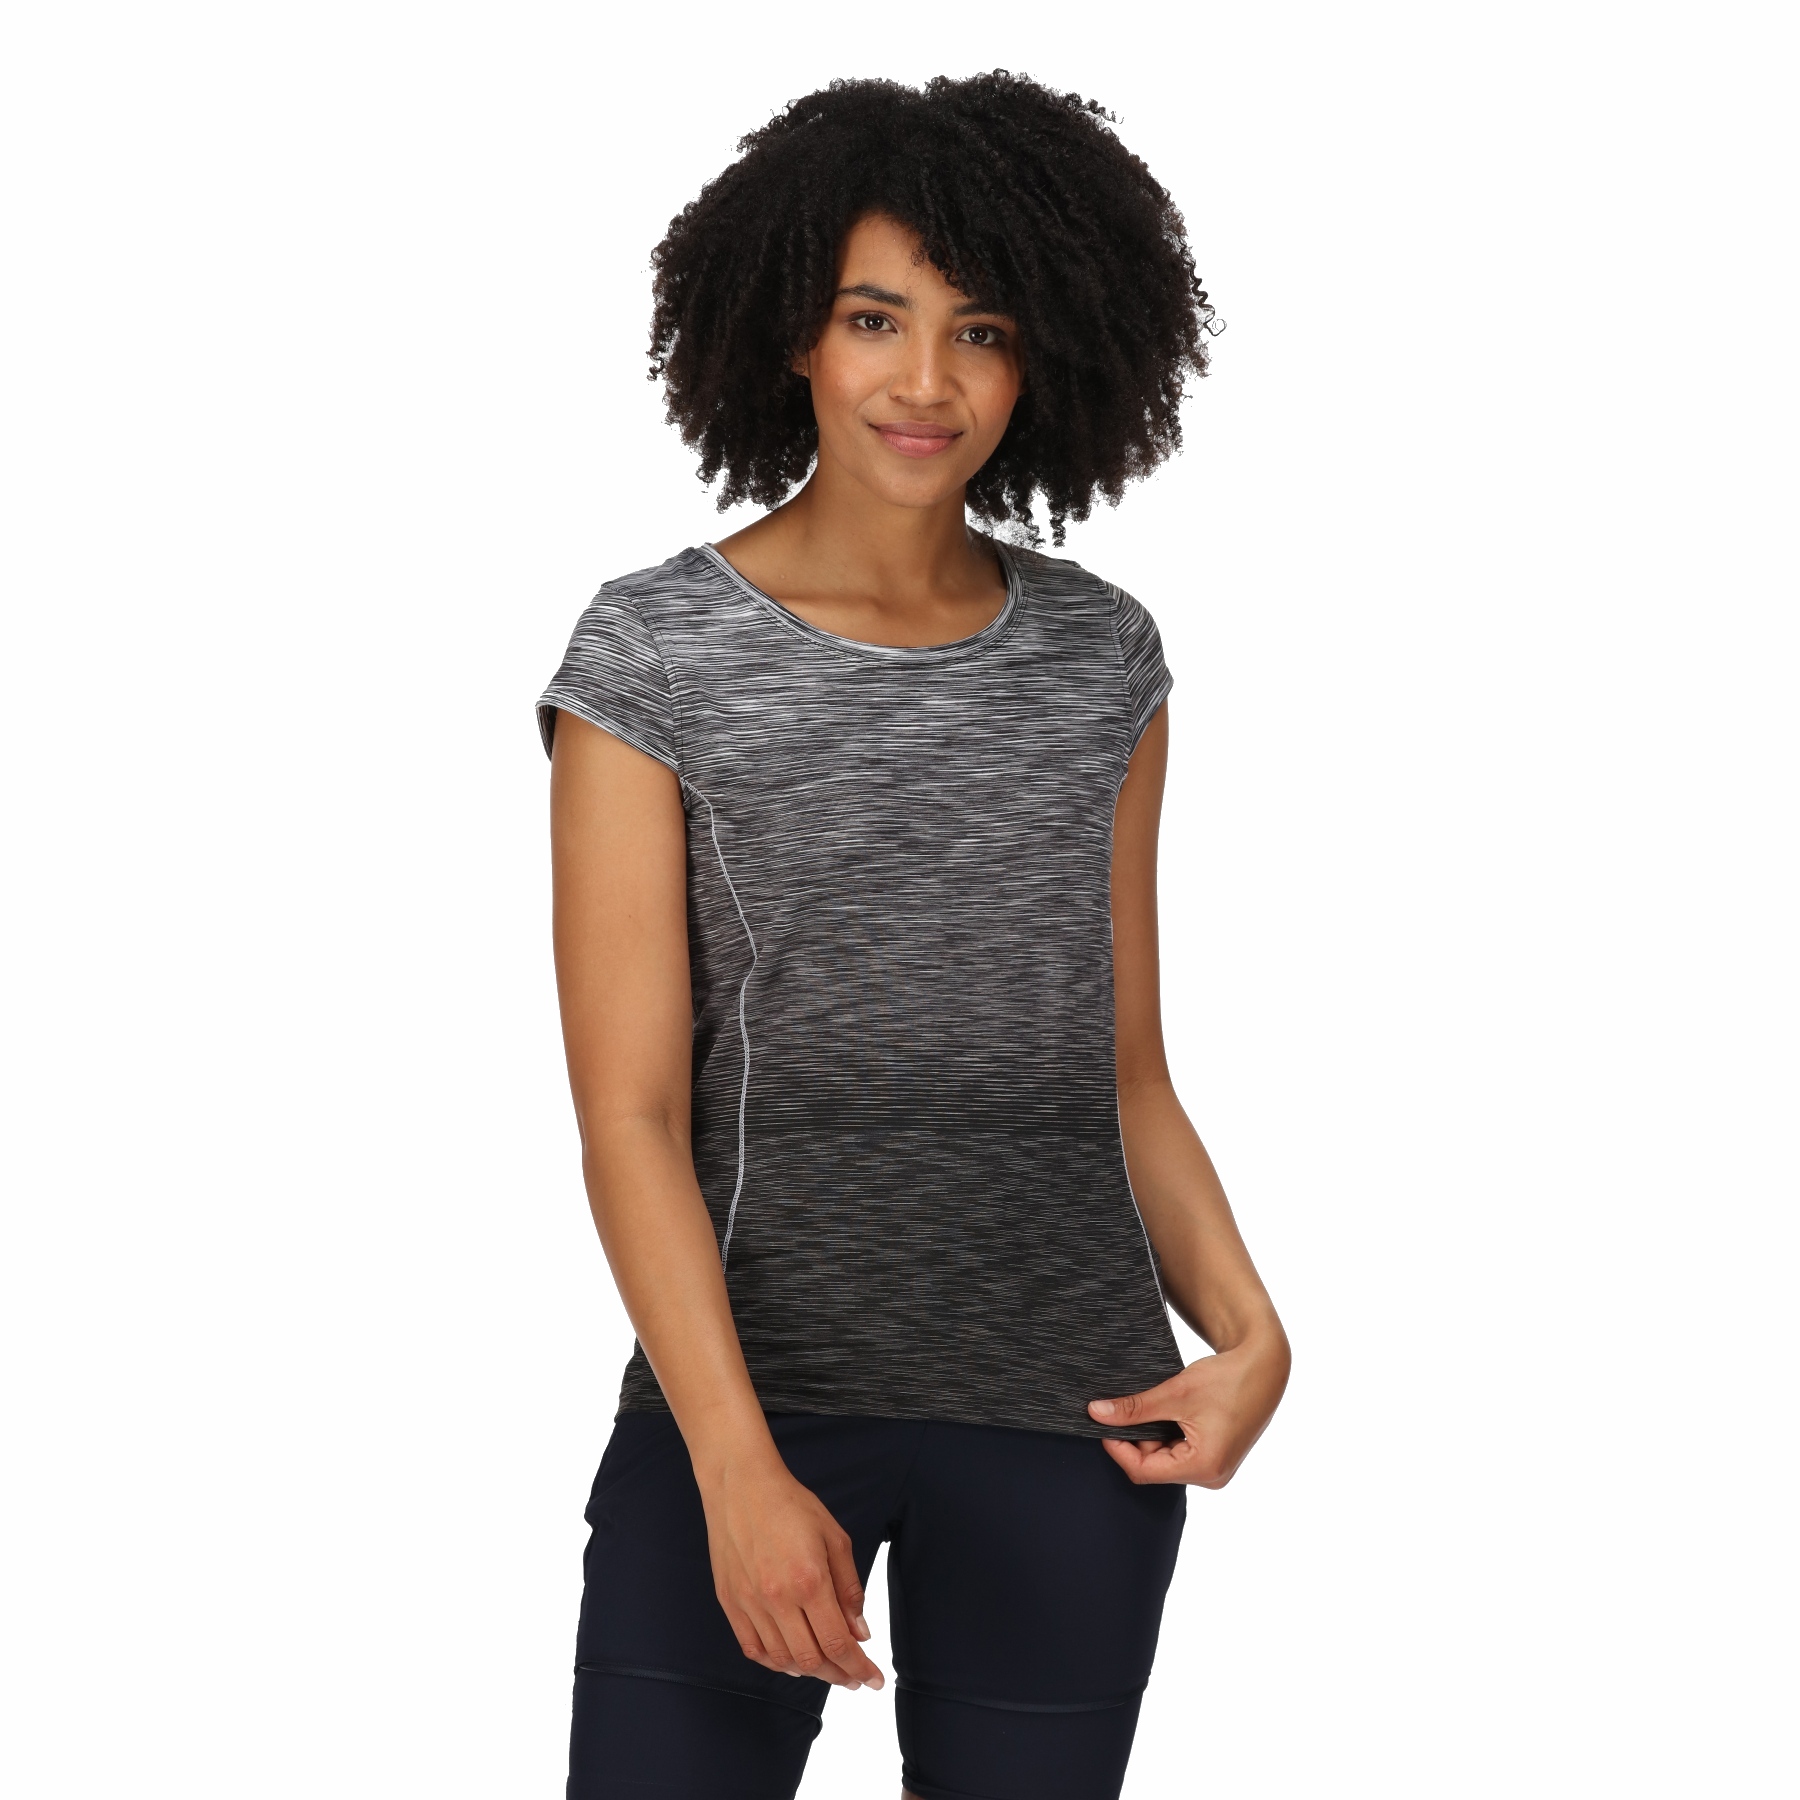 Produktbild von Regatta Hyperdimension II T-Shirt Damen - Black Ombre 5RN